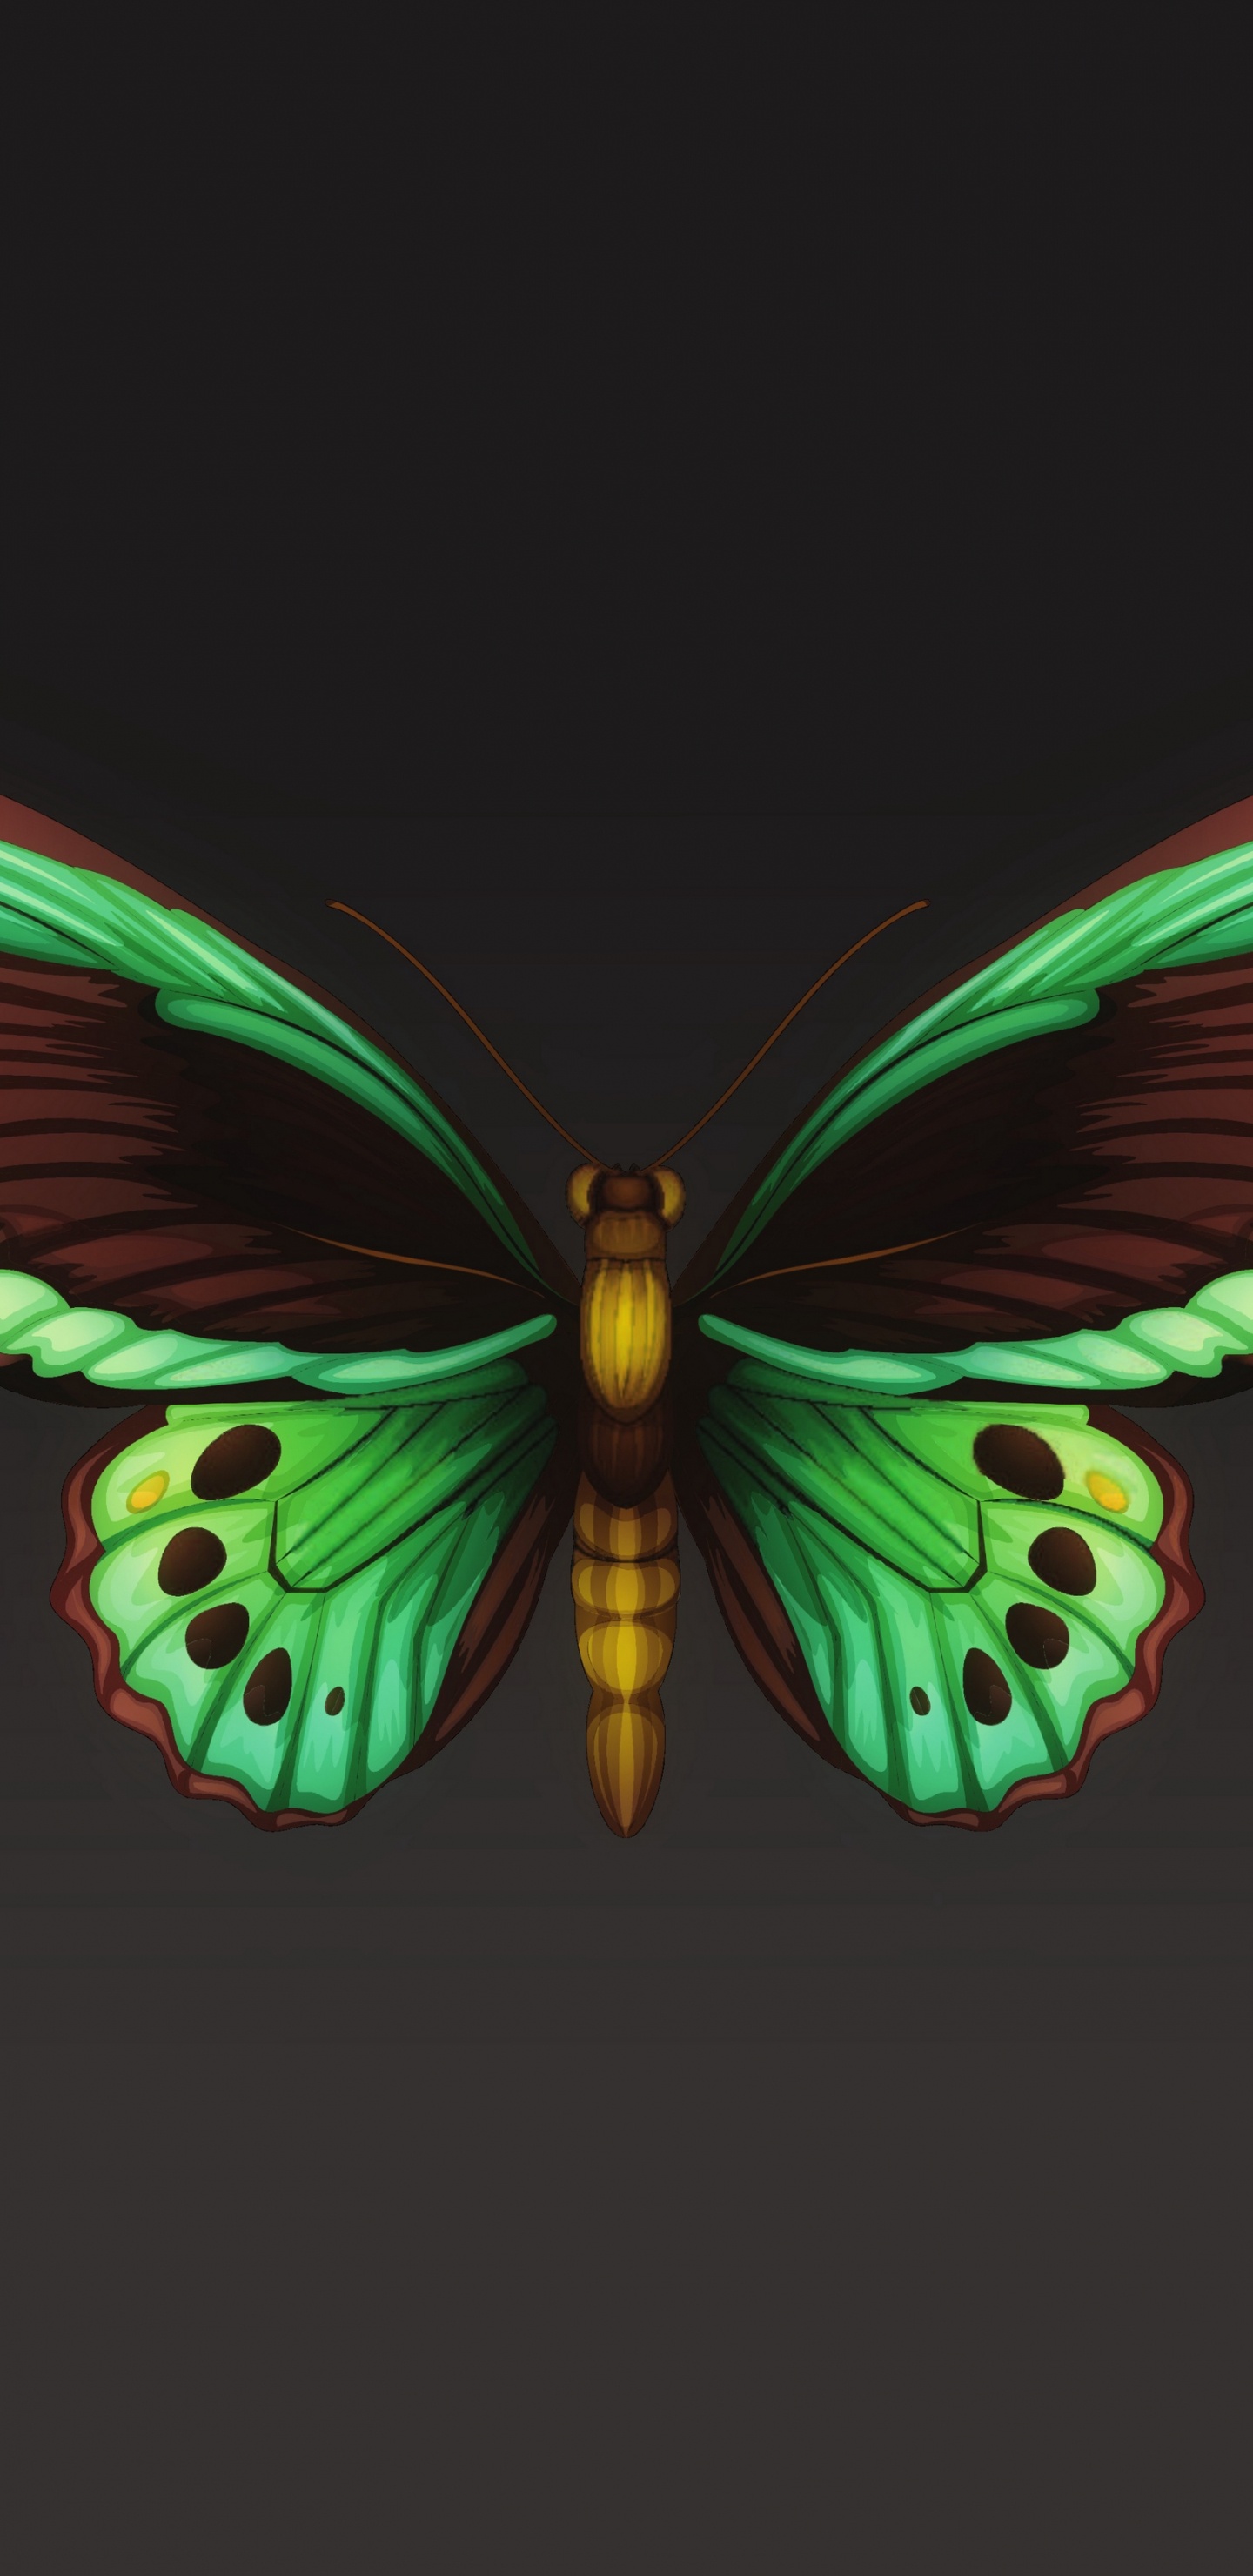 飞蛾和蝴蝶, 昆虫, 翼, 对称, 节肢动物 壁纸 1440x2960 允许